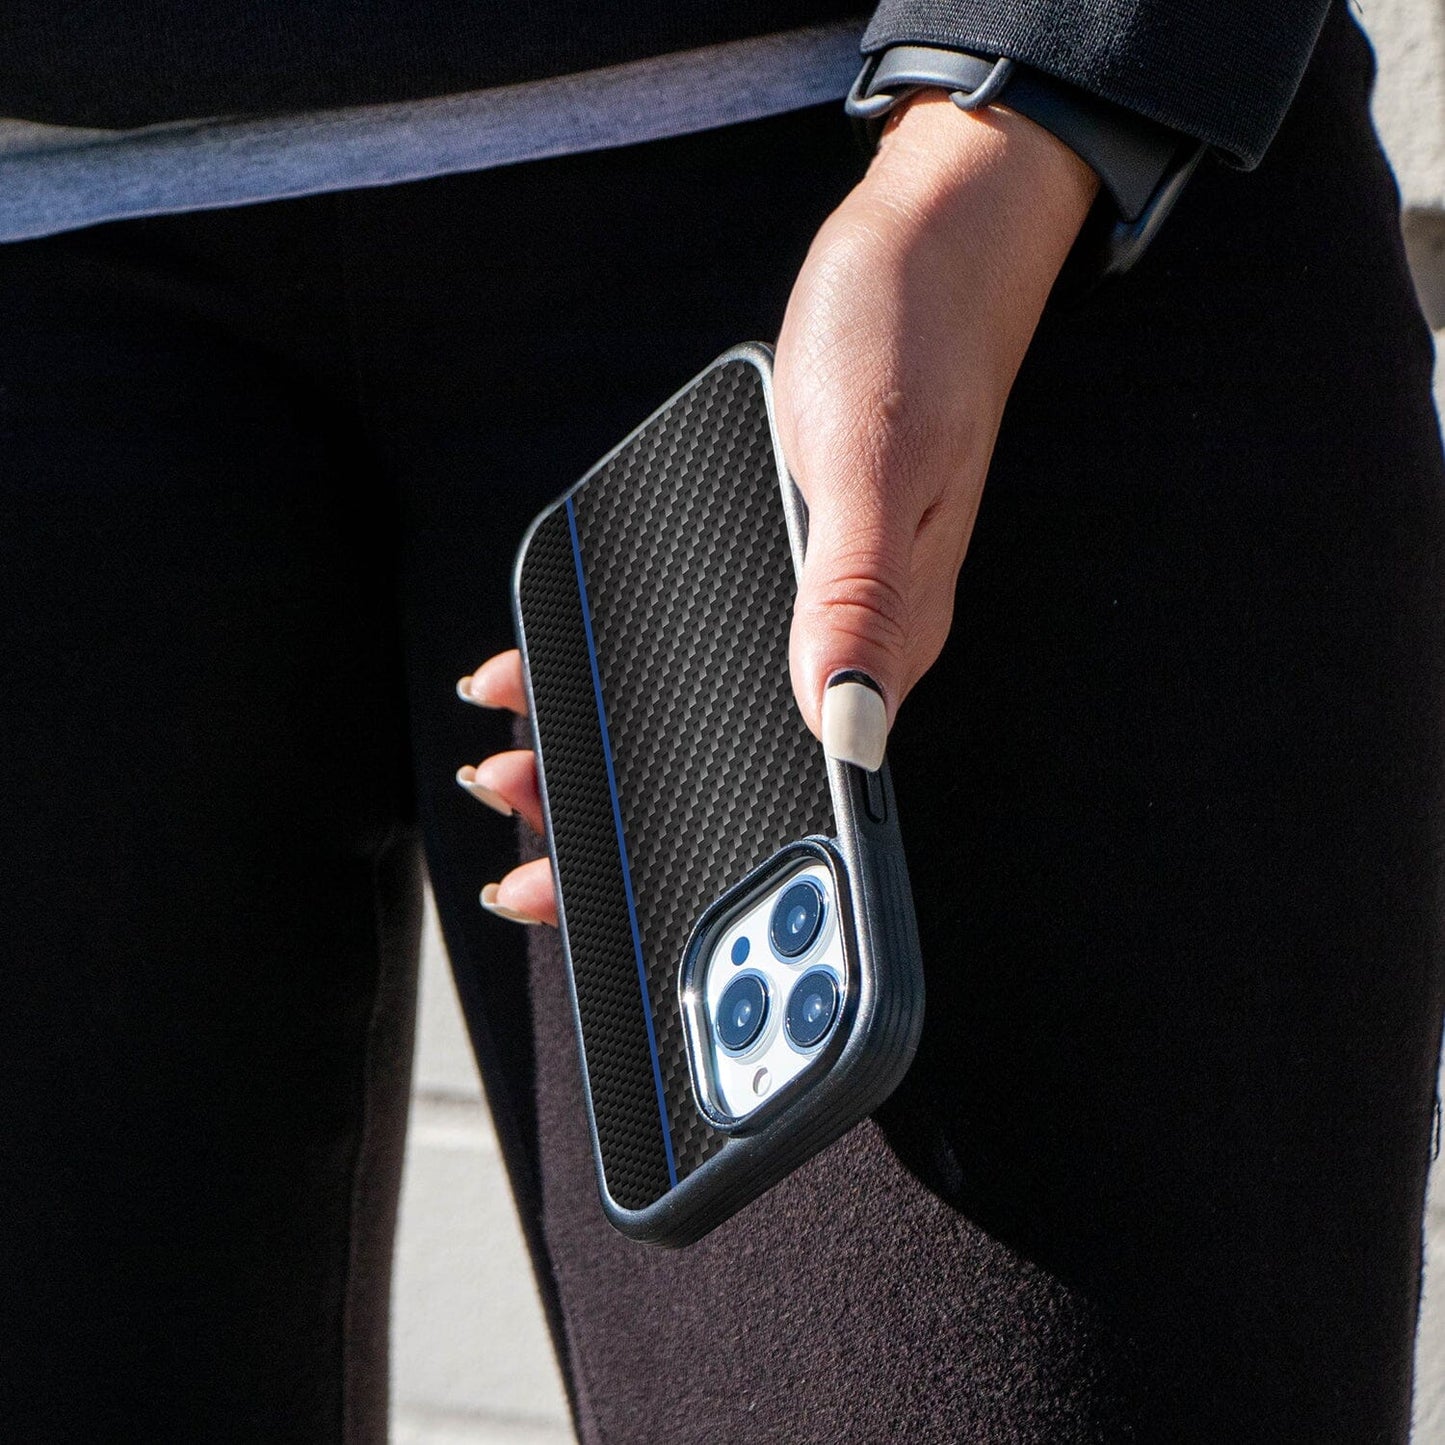 iPhone 14 Pro Blue Line Design Fremont Grip Case Black Carbon Fiber with MagSafe (On Hand)